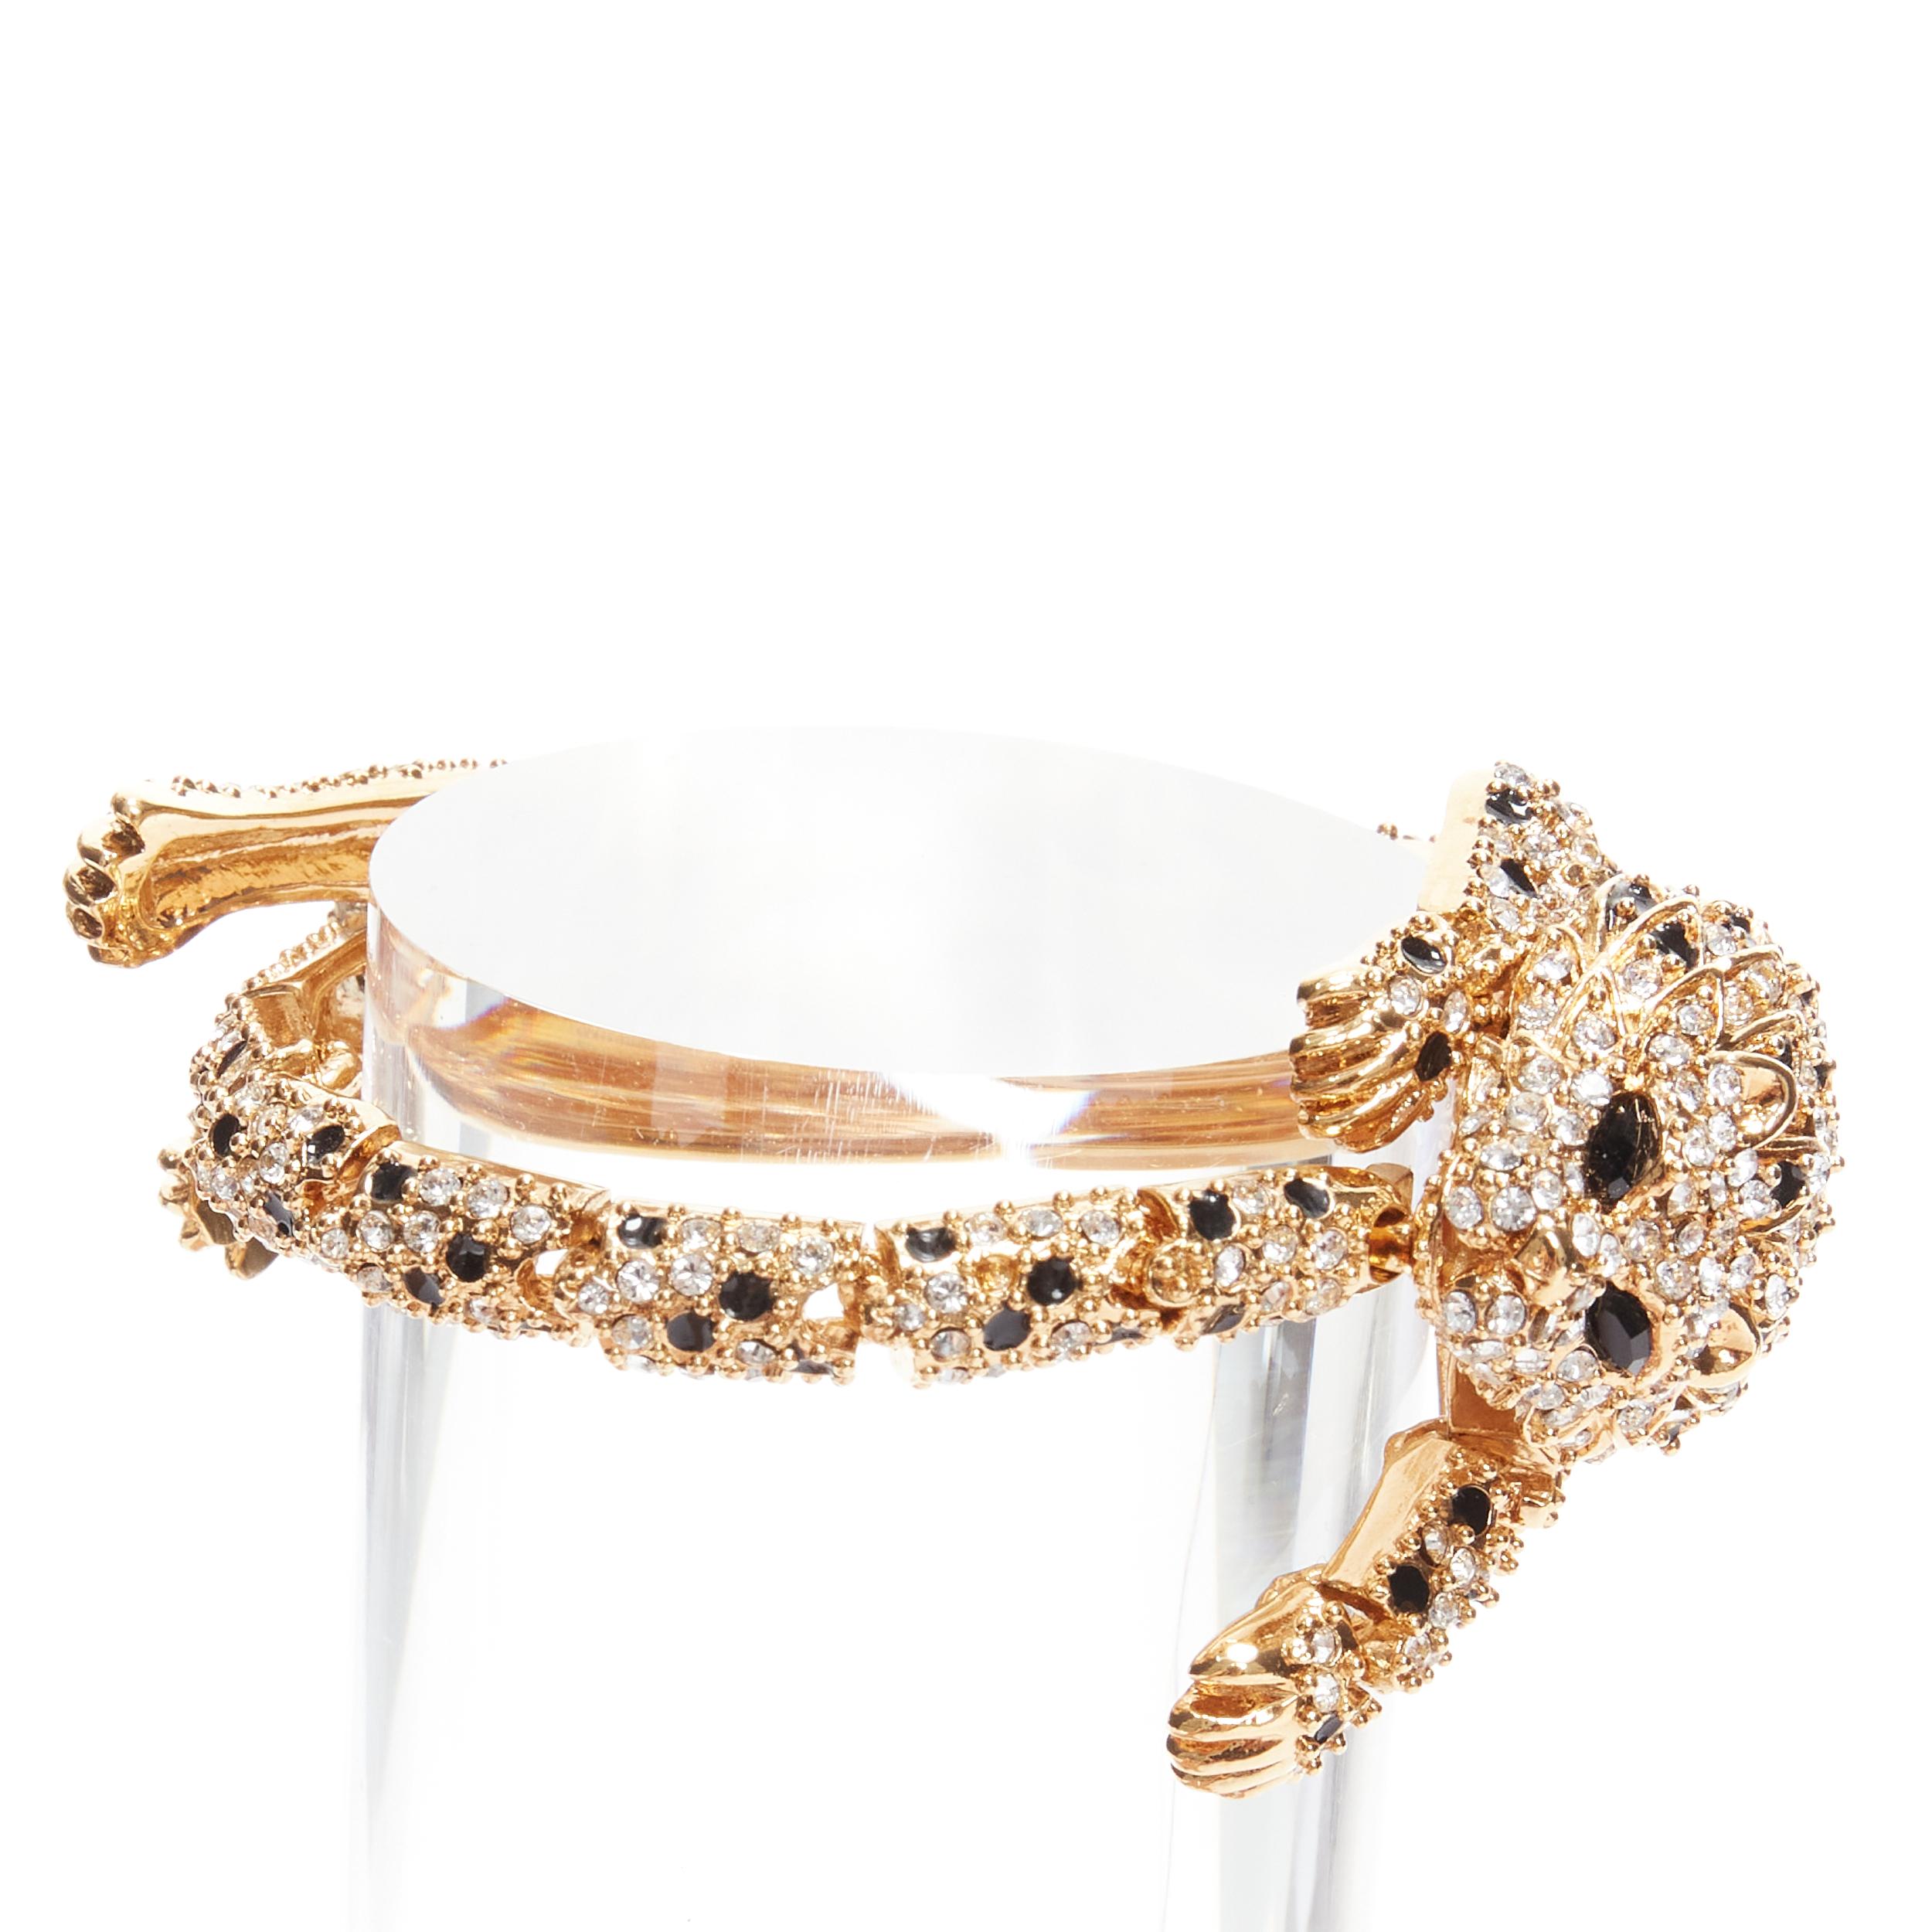 rare SAINT LAURENT Hedi Slimane crystal encrusted gold lion  cocktail bracelet 1